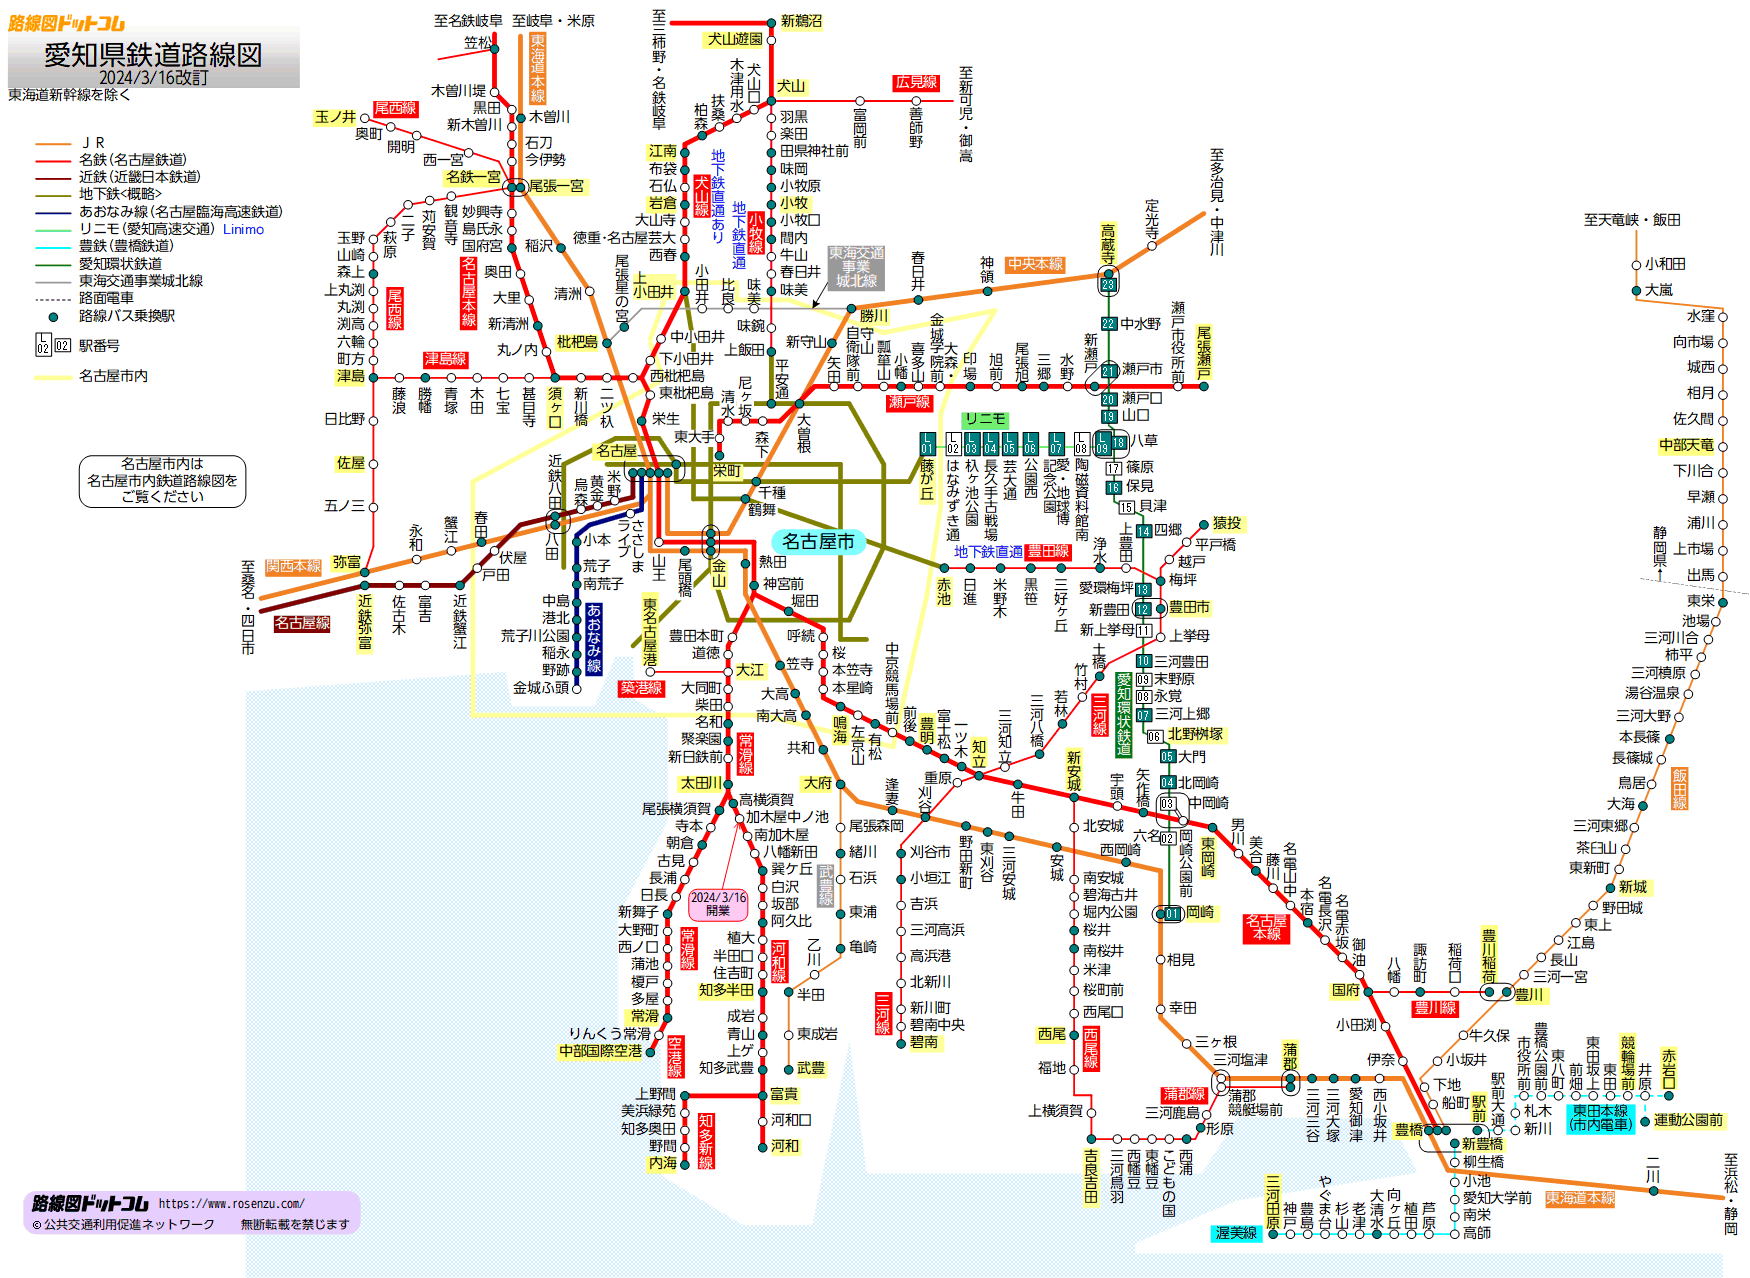 コム 路線 図 ドット 路線図ドットコムが挑み続けた公共交通データの収集と整備の19年